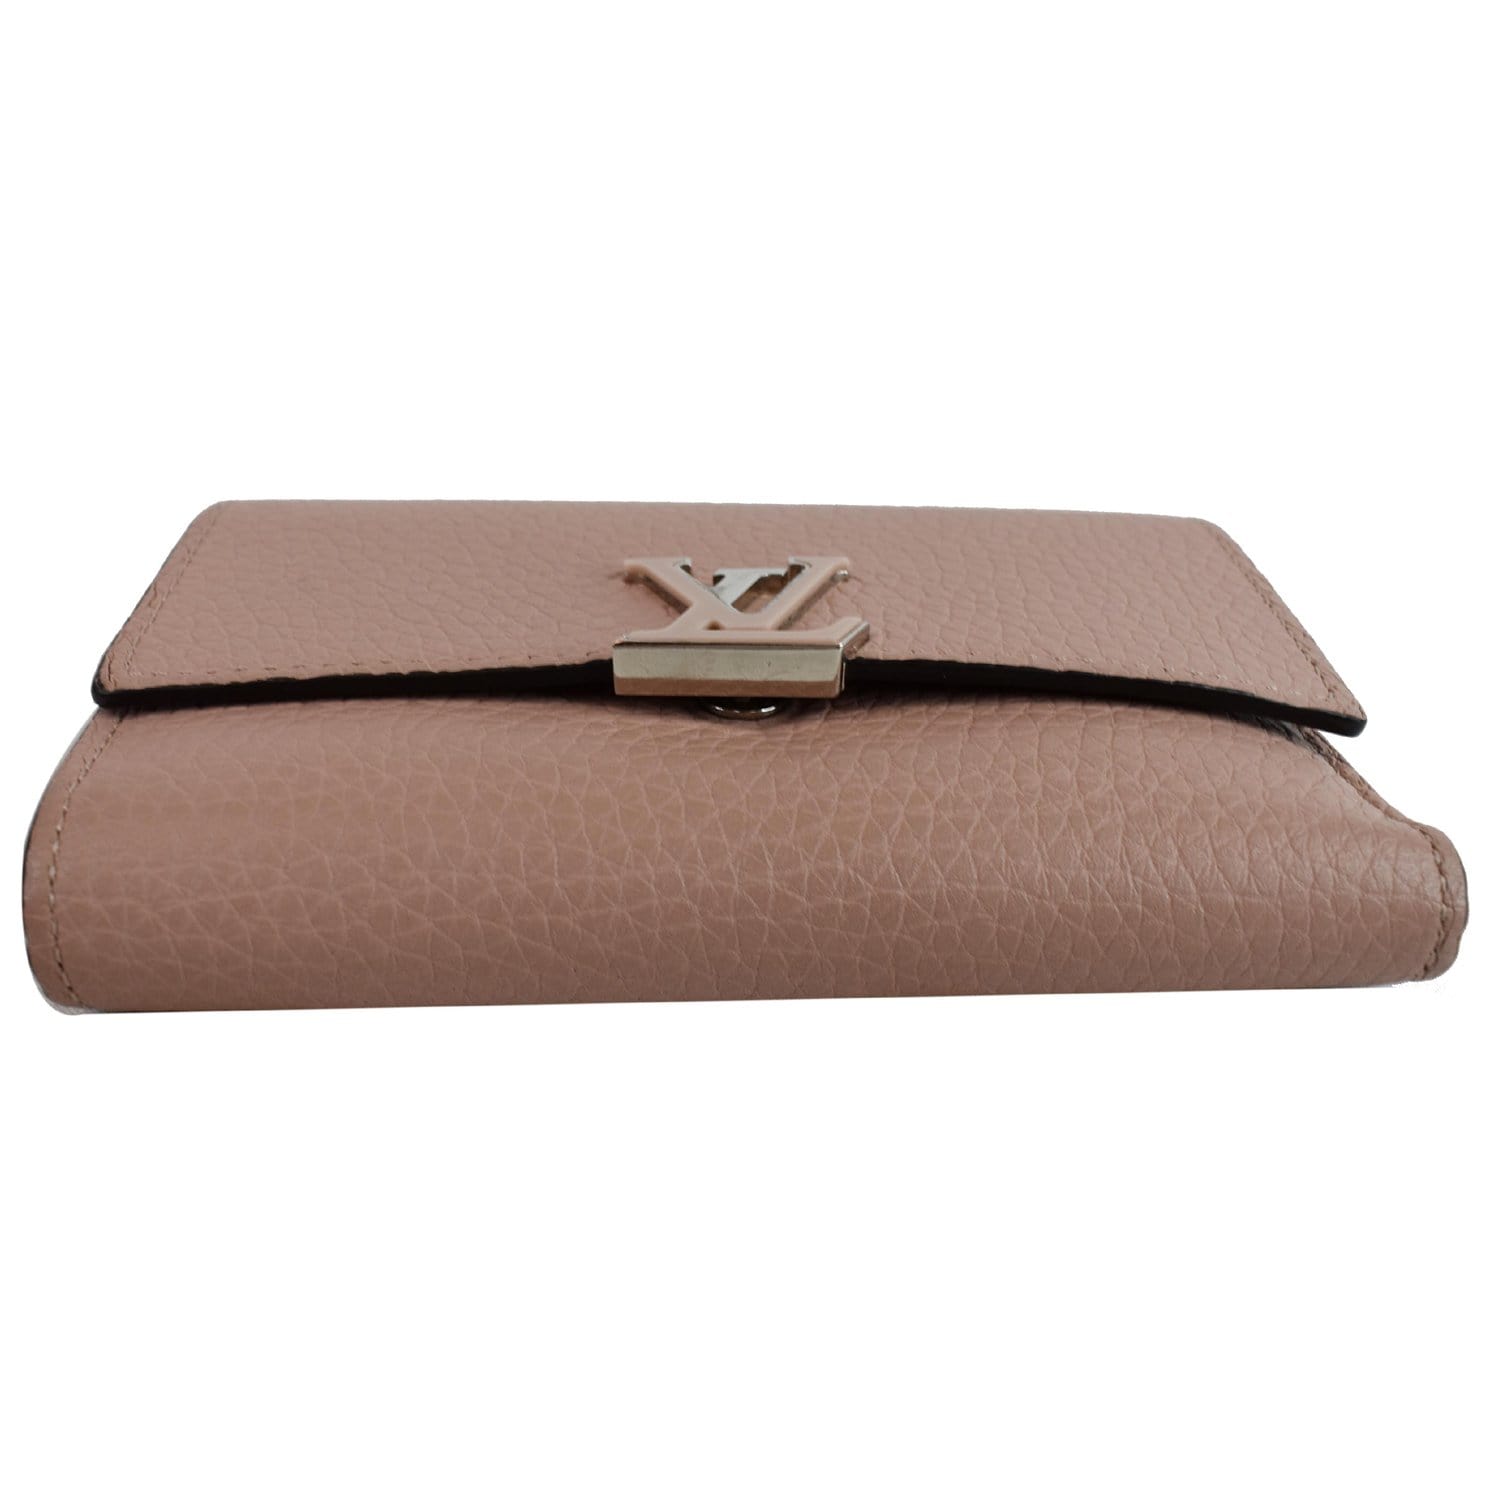 Louis Vuitton Capucines Compact Wallet